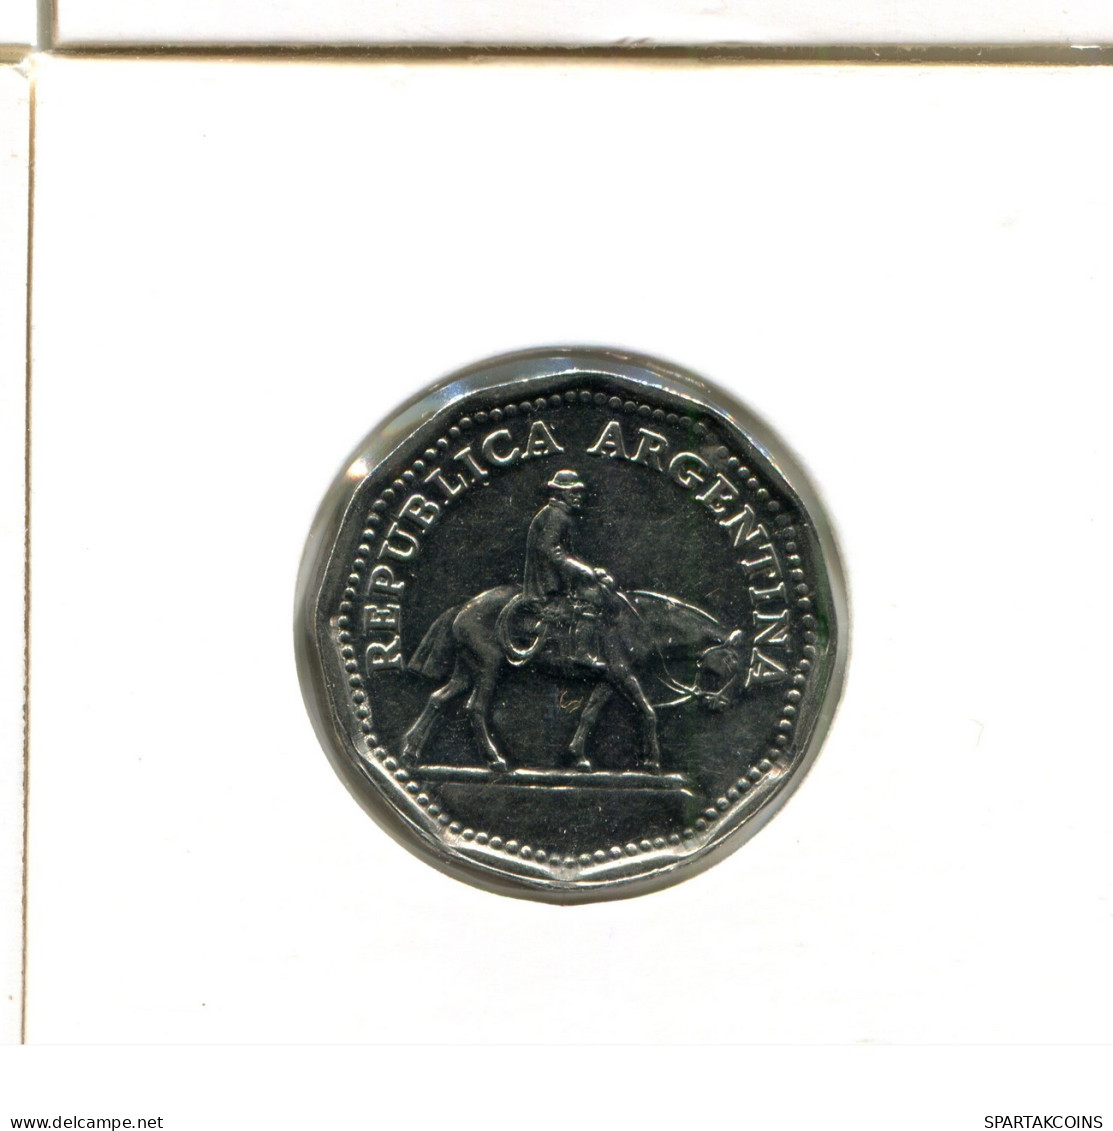 10 PESOS 1963 ARGENTINA Coin #AX303.U.A - Argentina